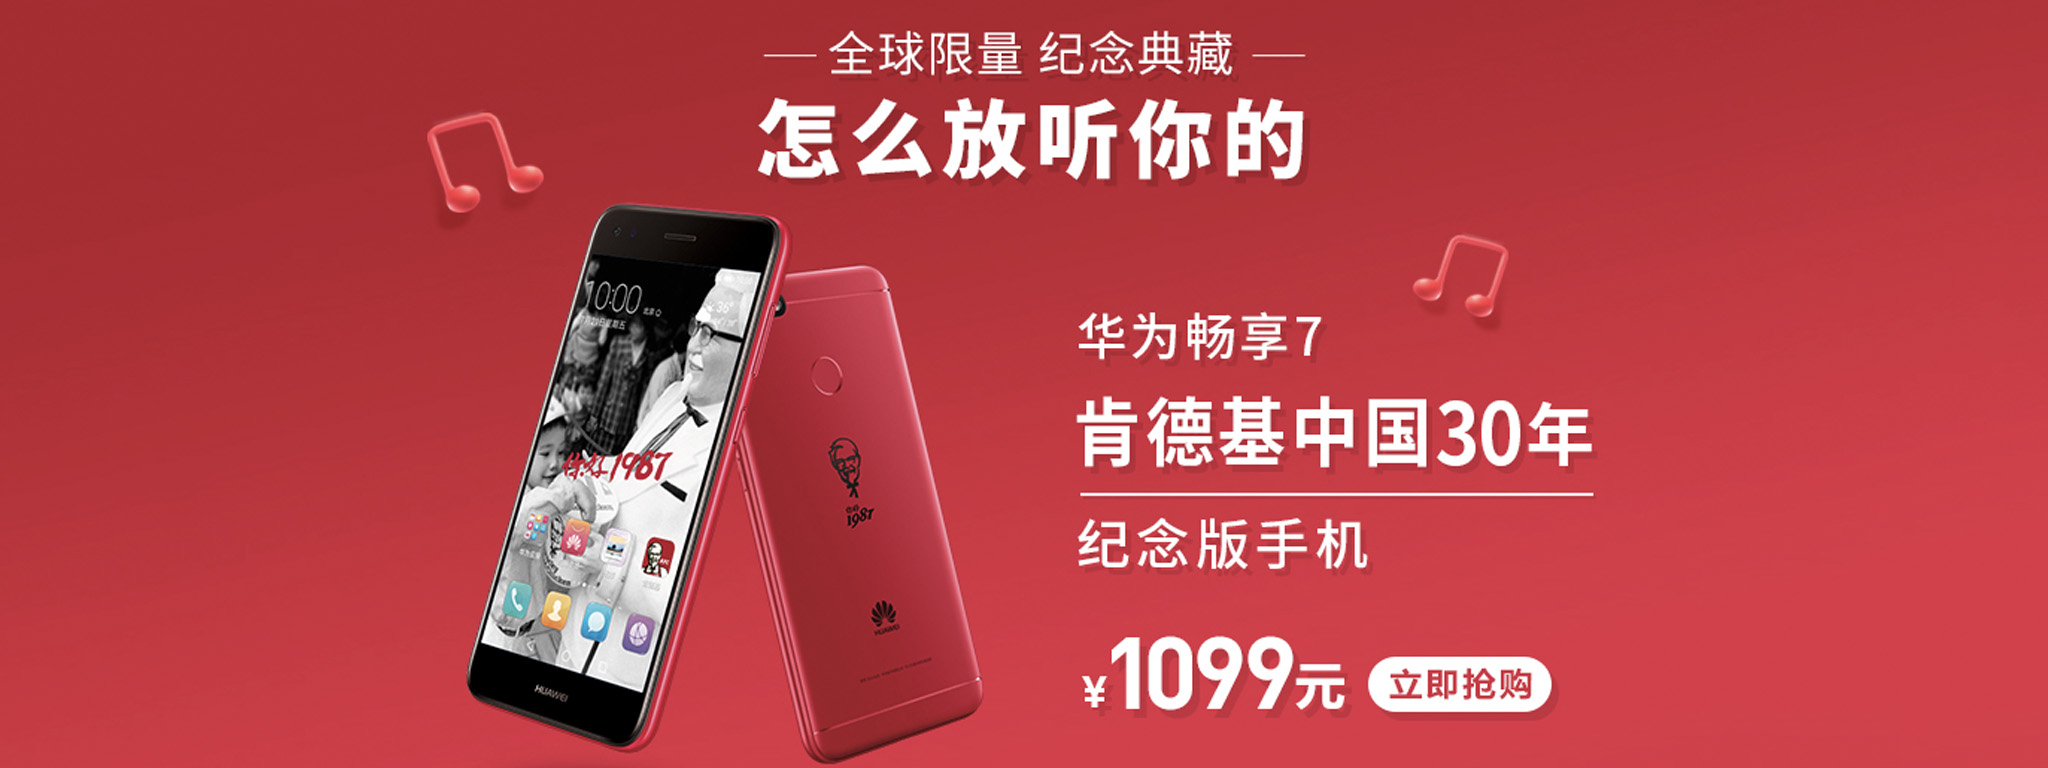 Điện thoại hiệu gà KFC: hợp tác với Huawei làm, chỉ có 5.000 máy, giá 162 USD